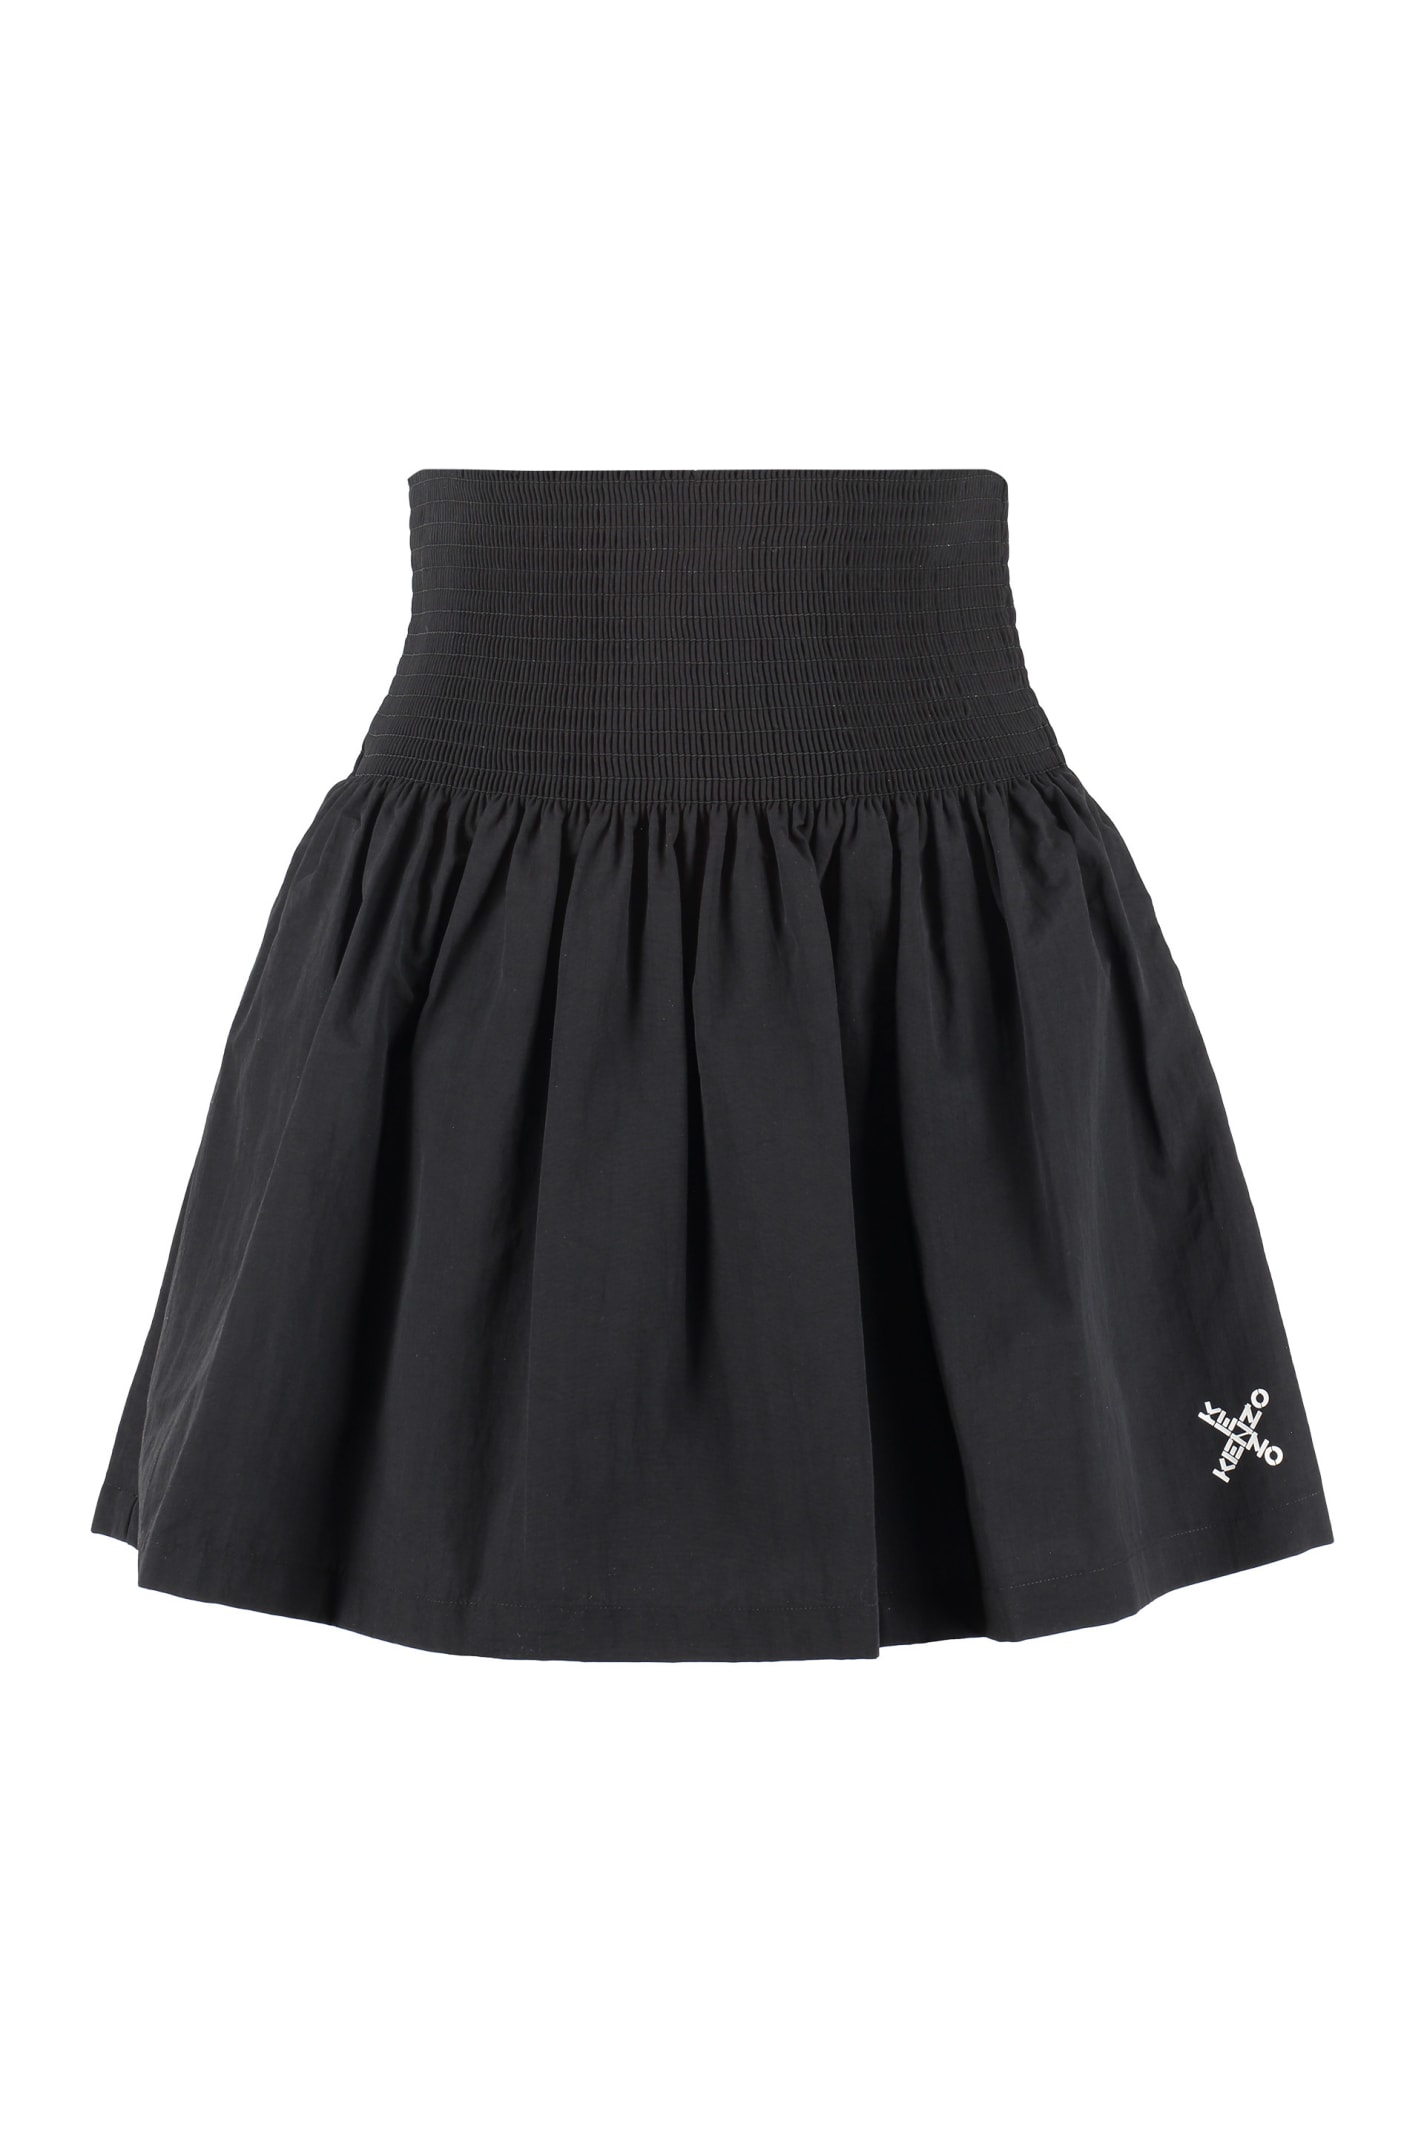 Kenzo Full Skirt